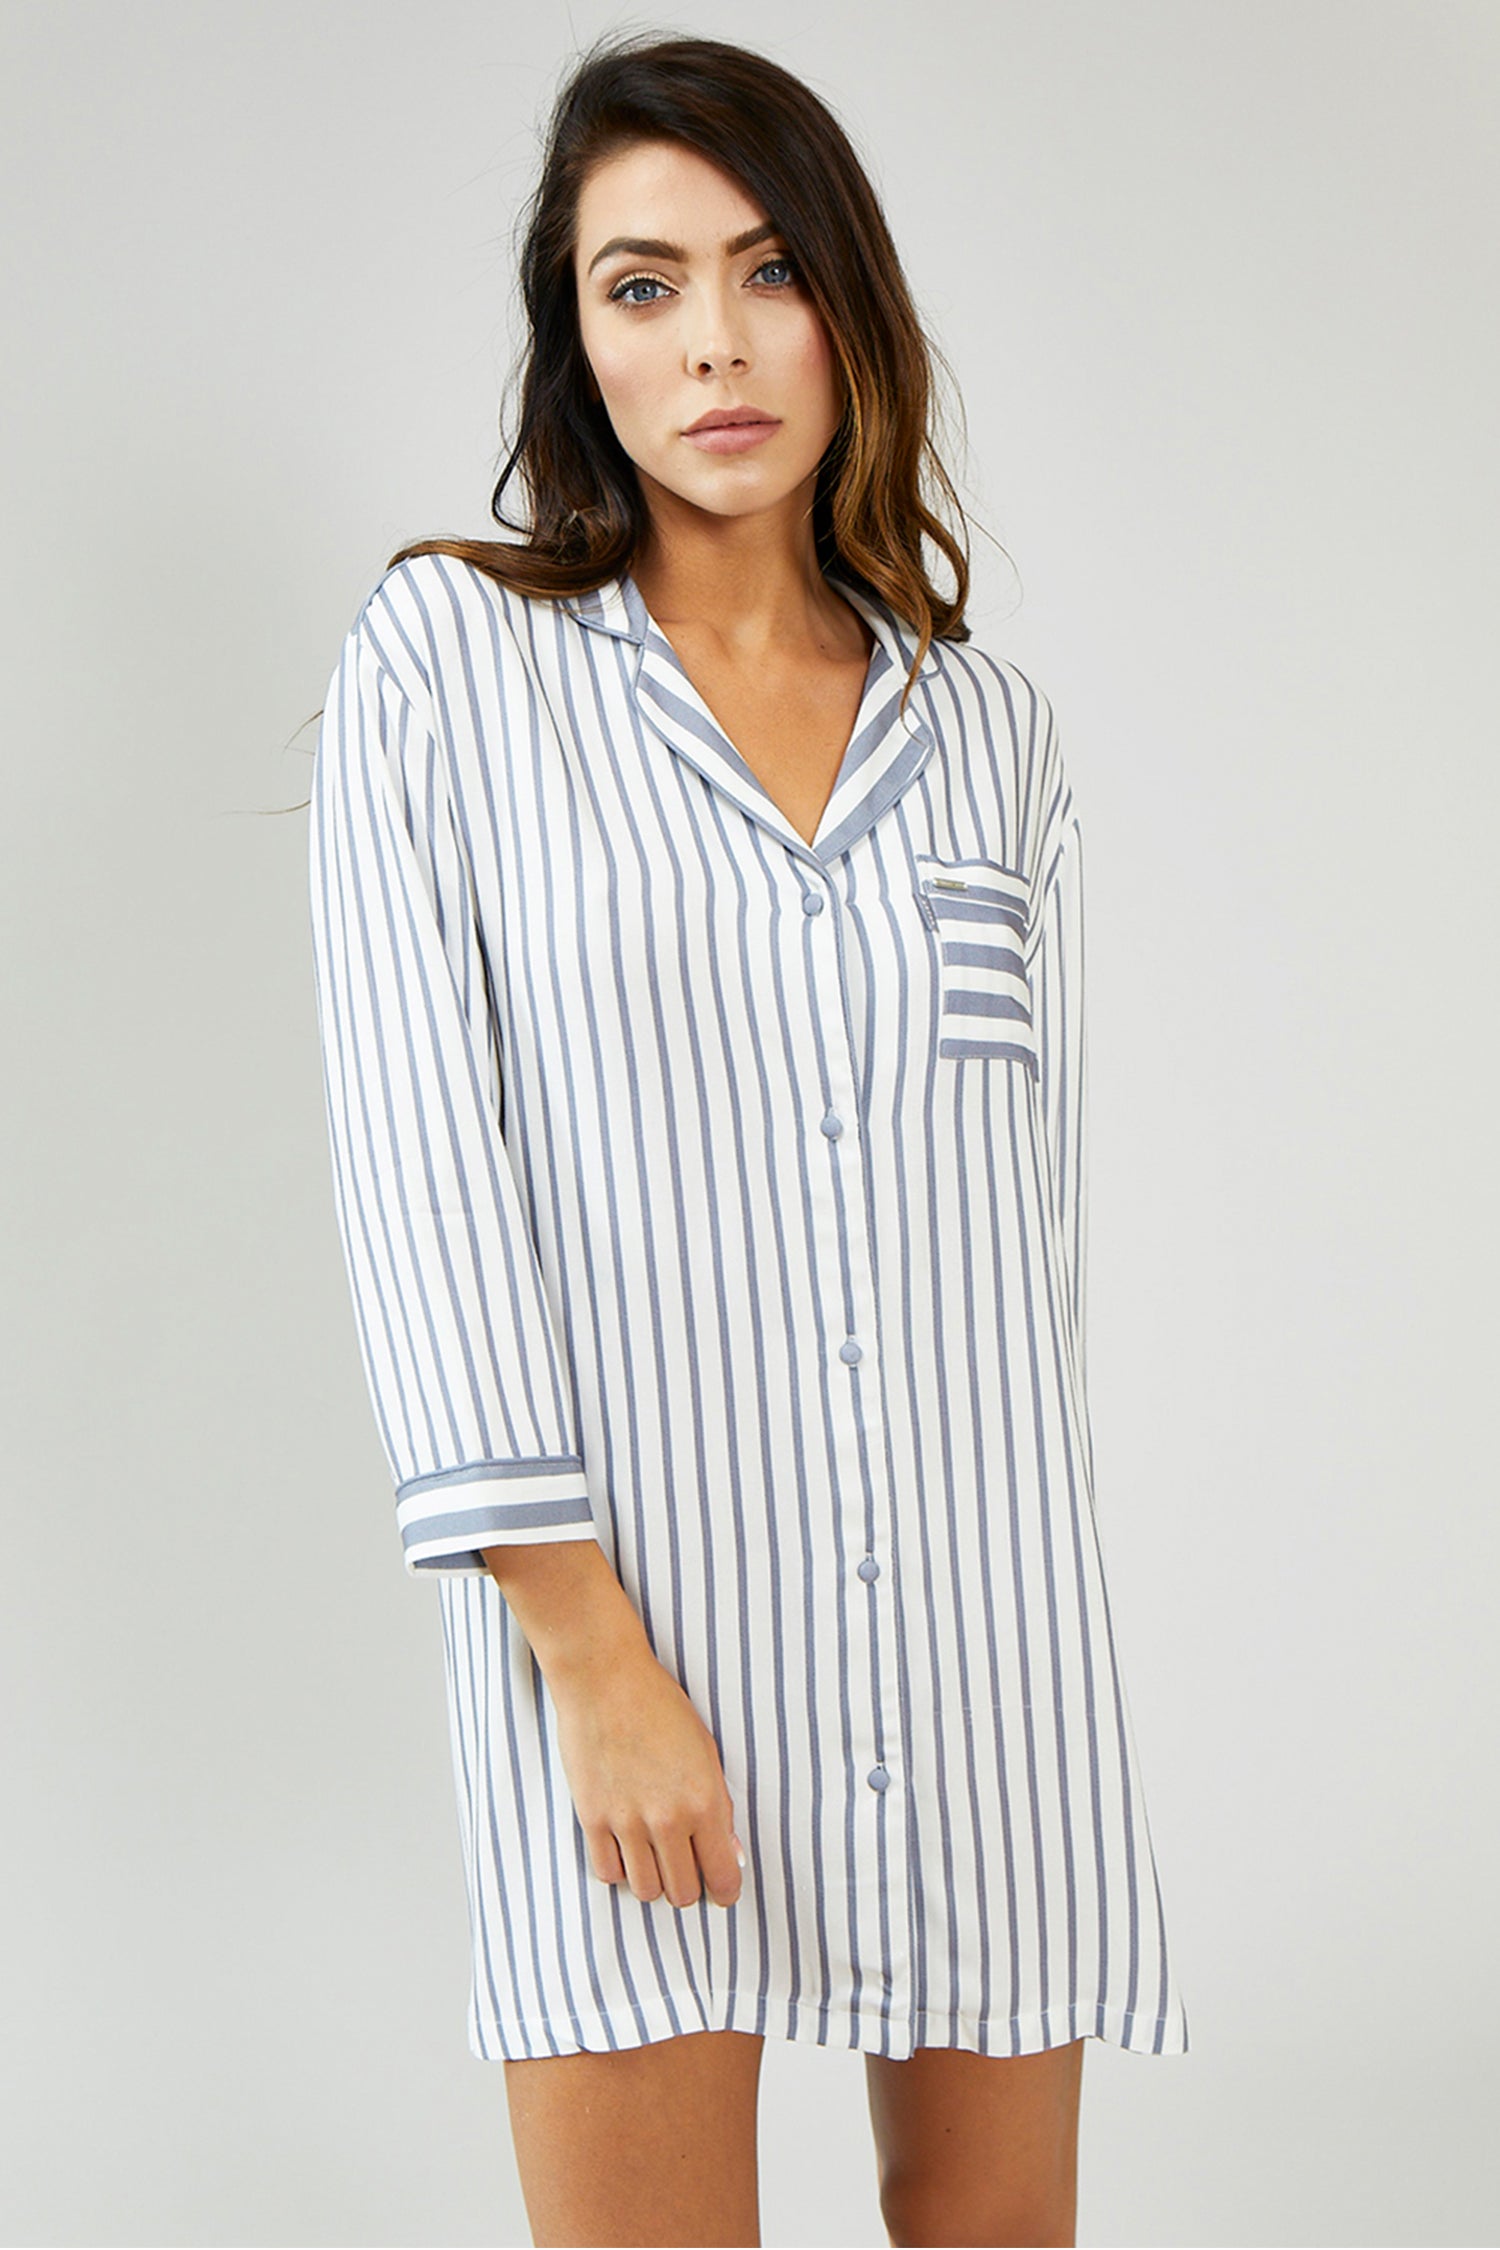 Womens Stripe Grey/Ecru Nightshirt Nightwear from Pretty You London ...